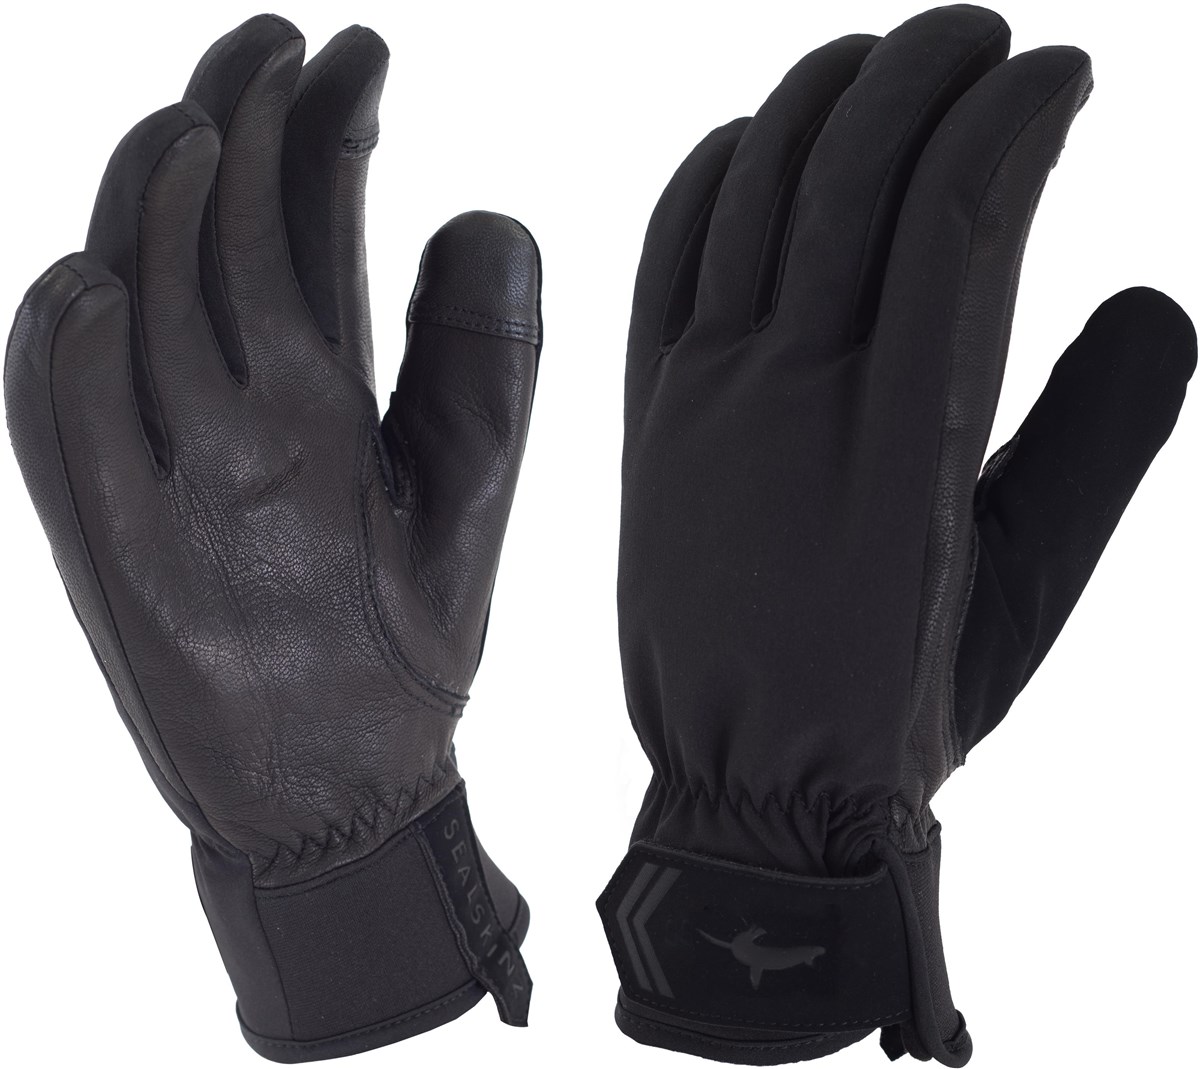 SealSkinz Womens All Season Long Finger Gloves